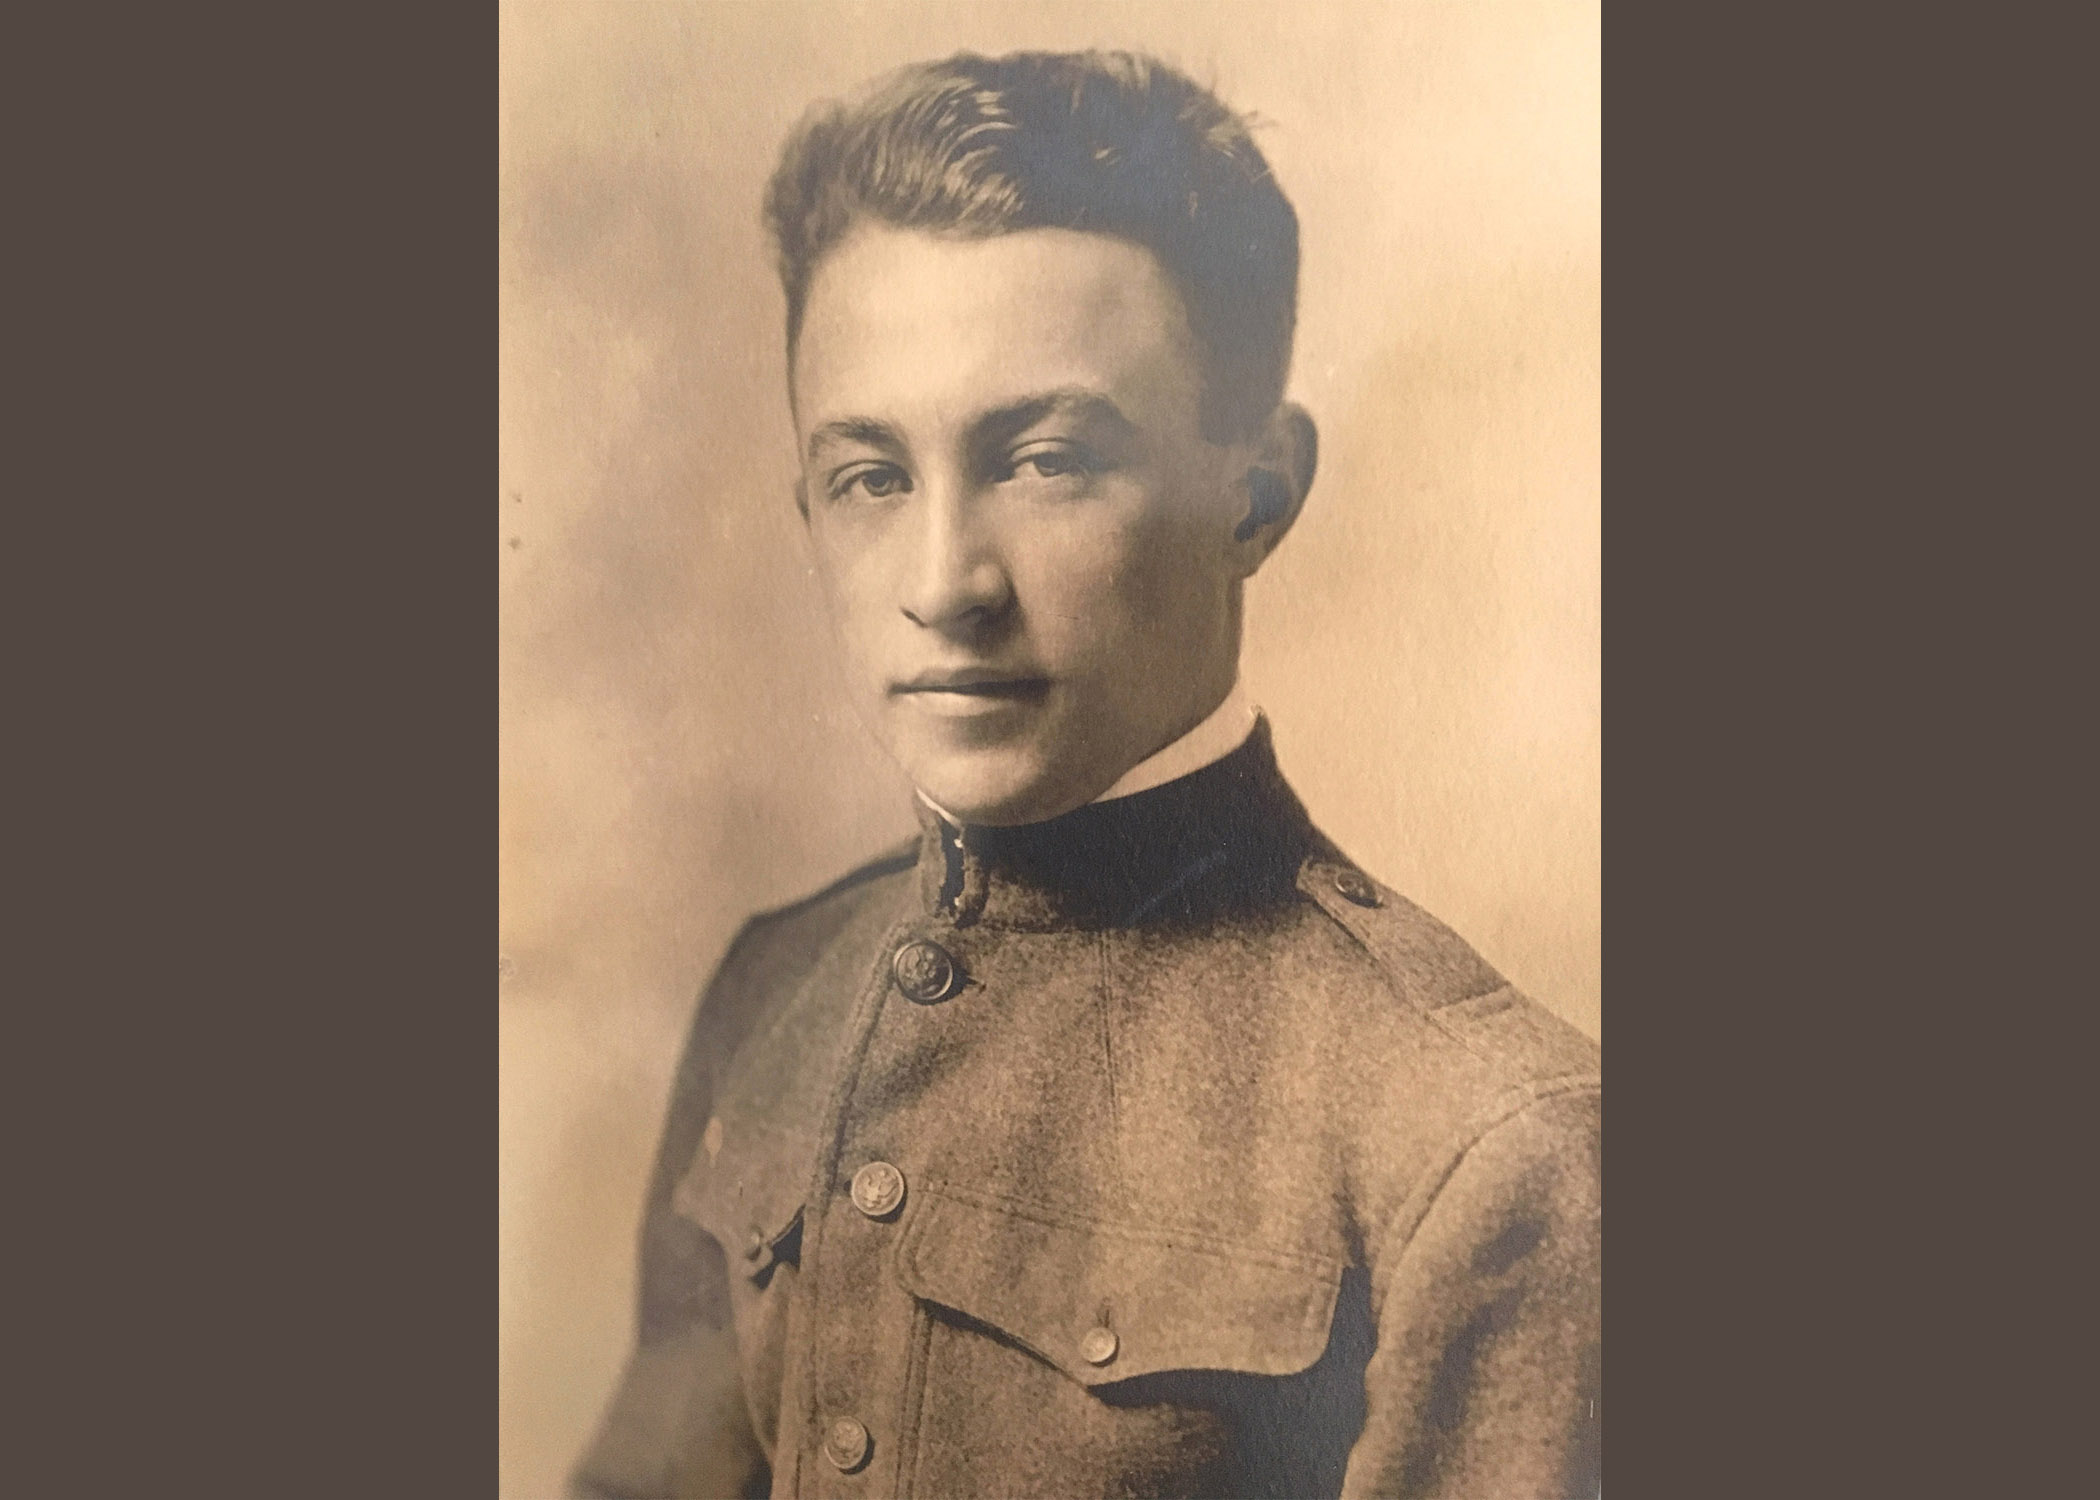 J. Vincent Hood in his WWI service uniform.